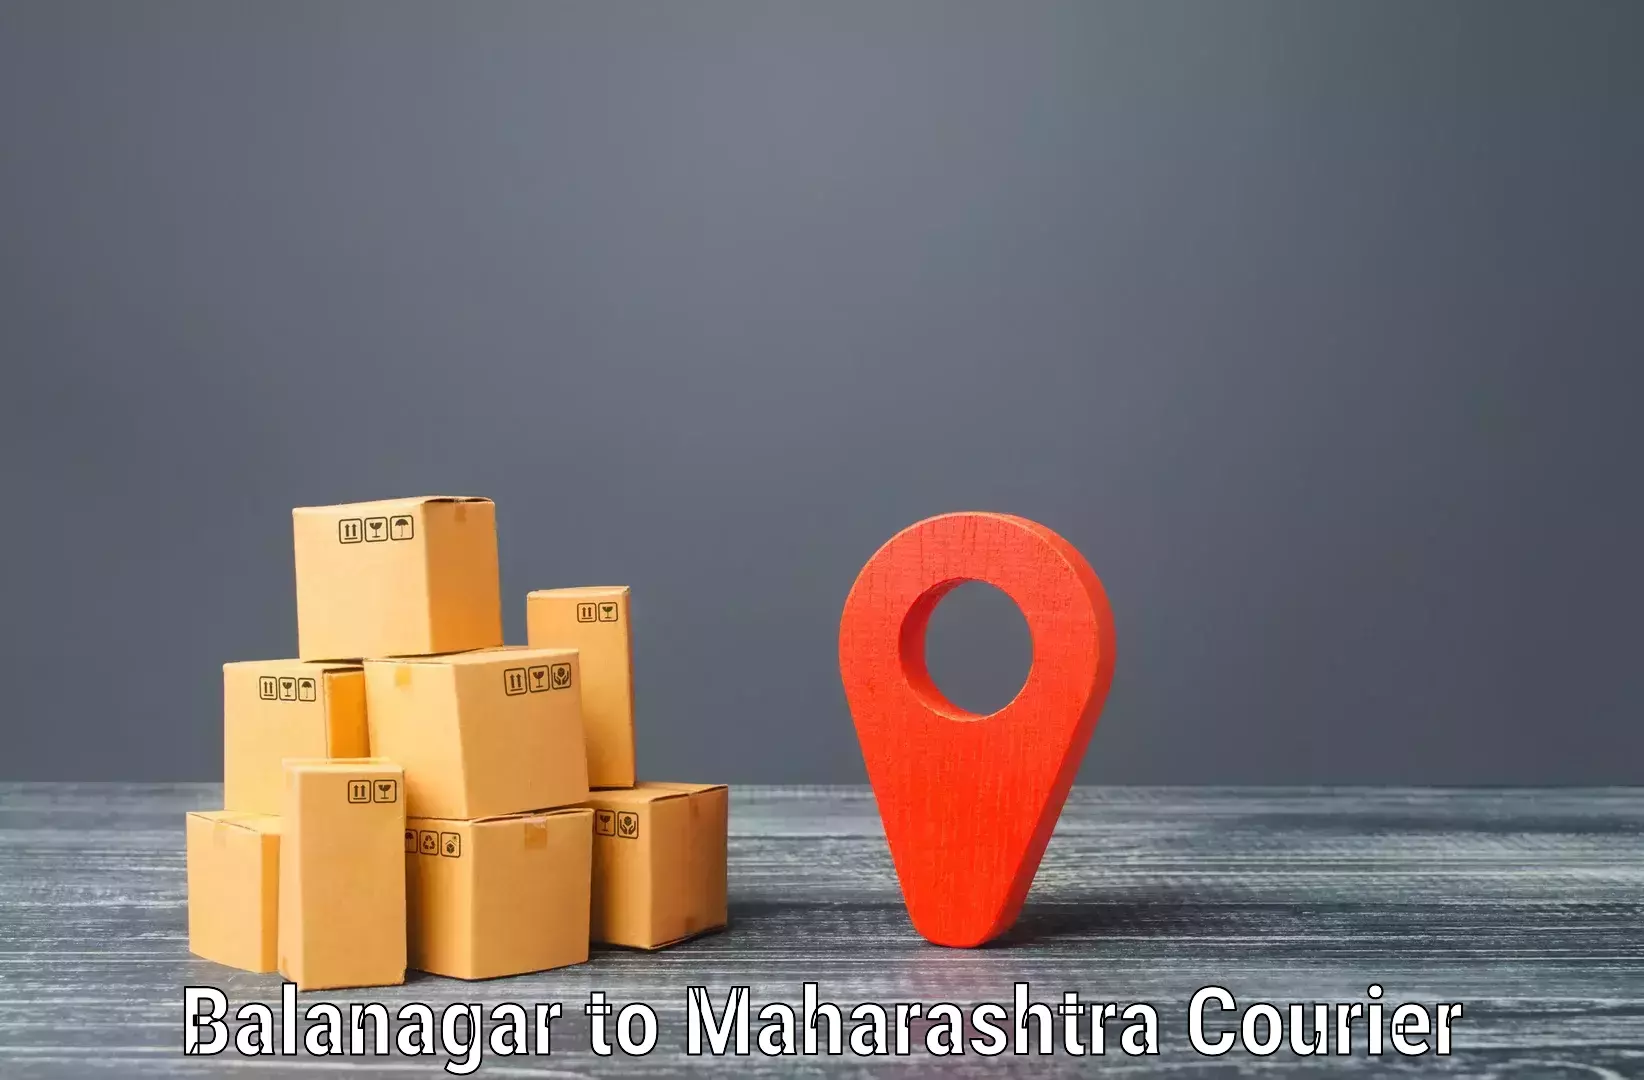 Global courier networks Balanagar to Parner